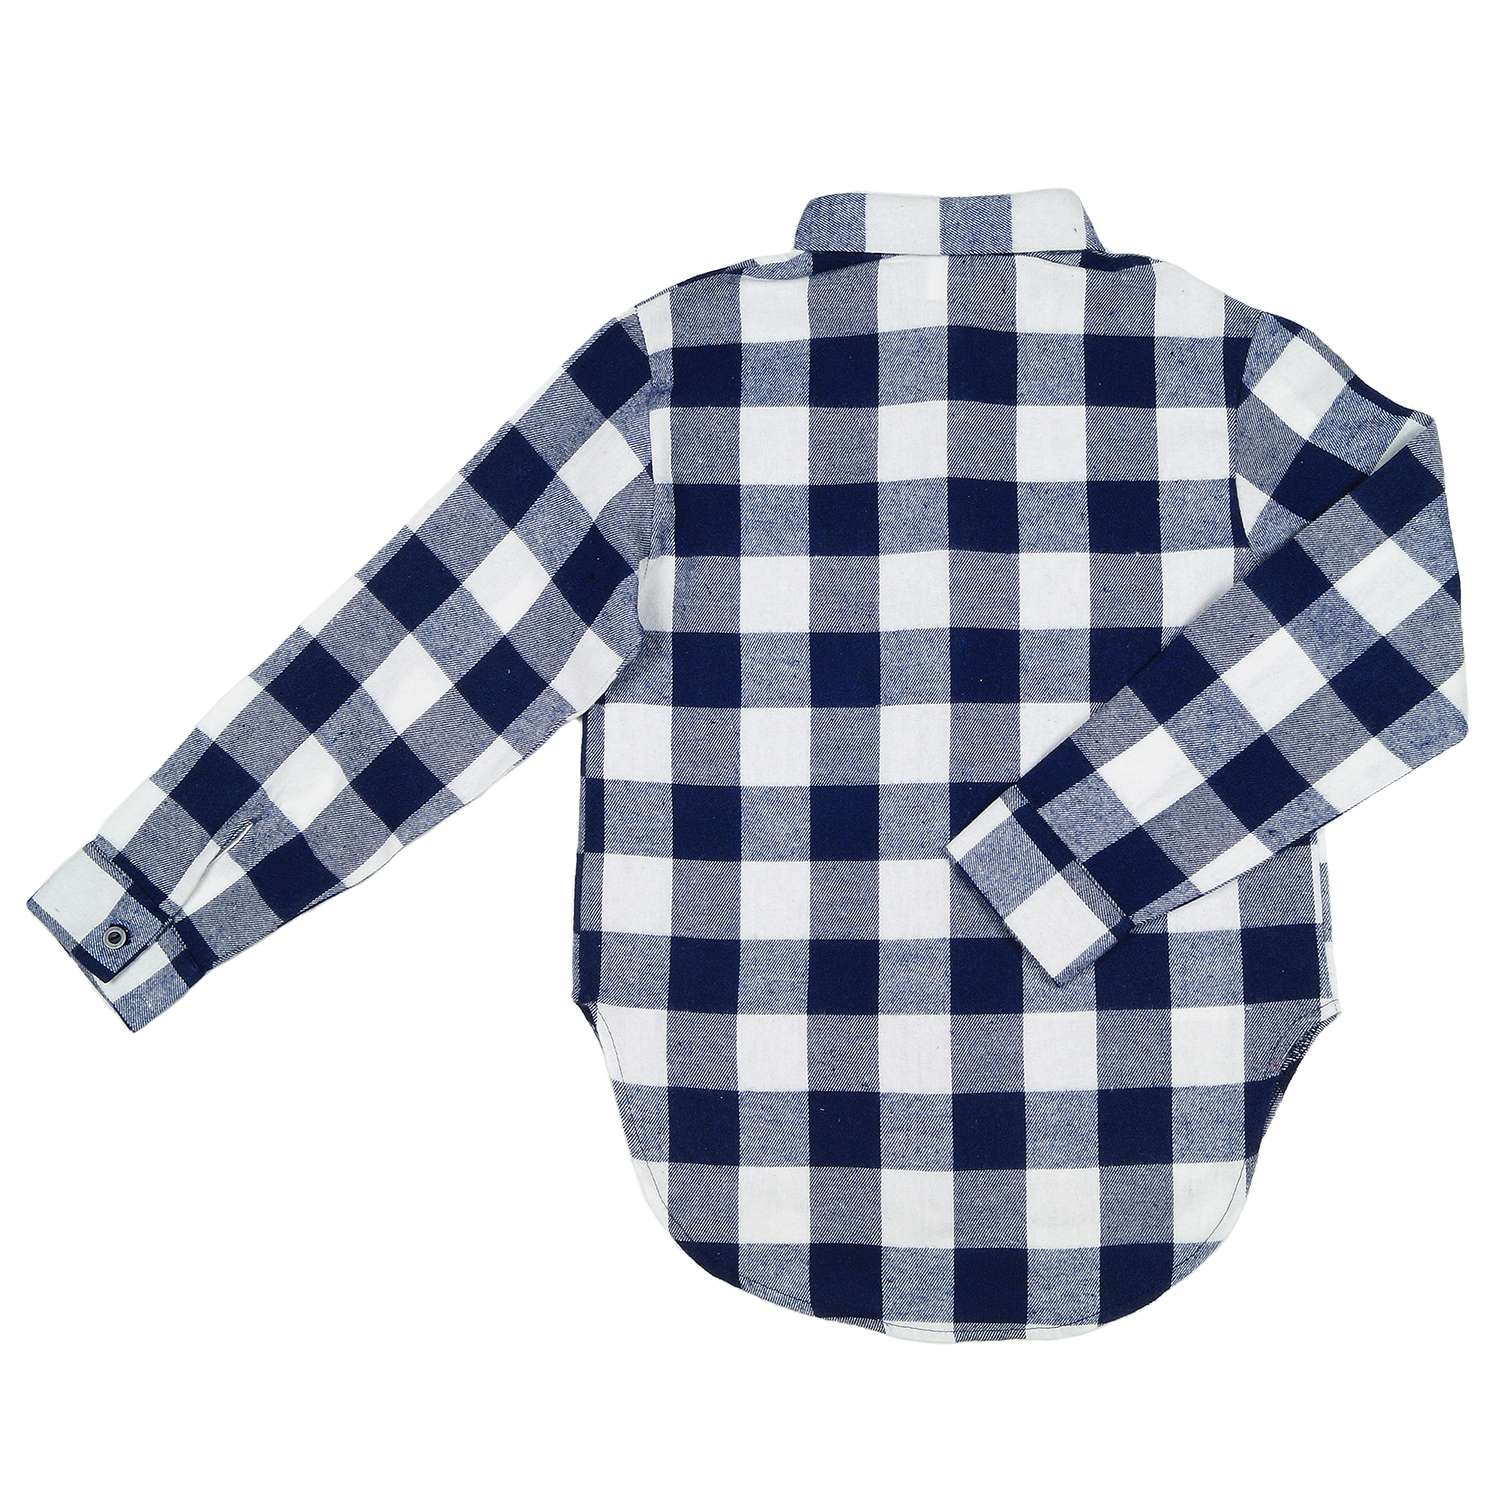 Рубашка Детская Одежда 4101Флн/белый_синий2 - фото 2